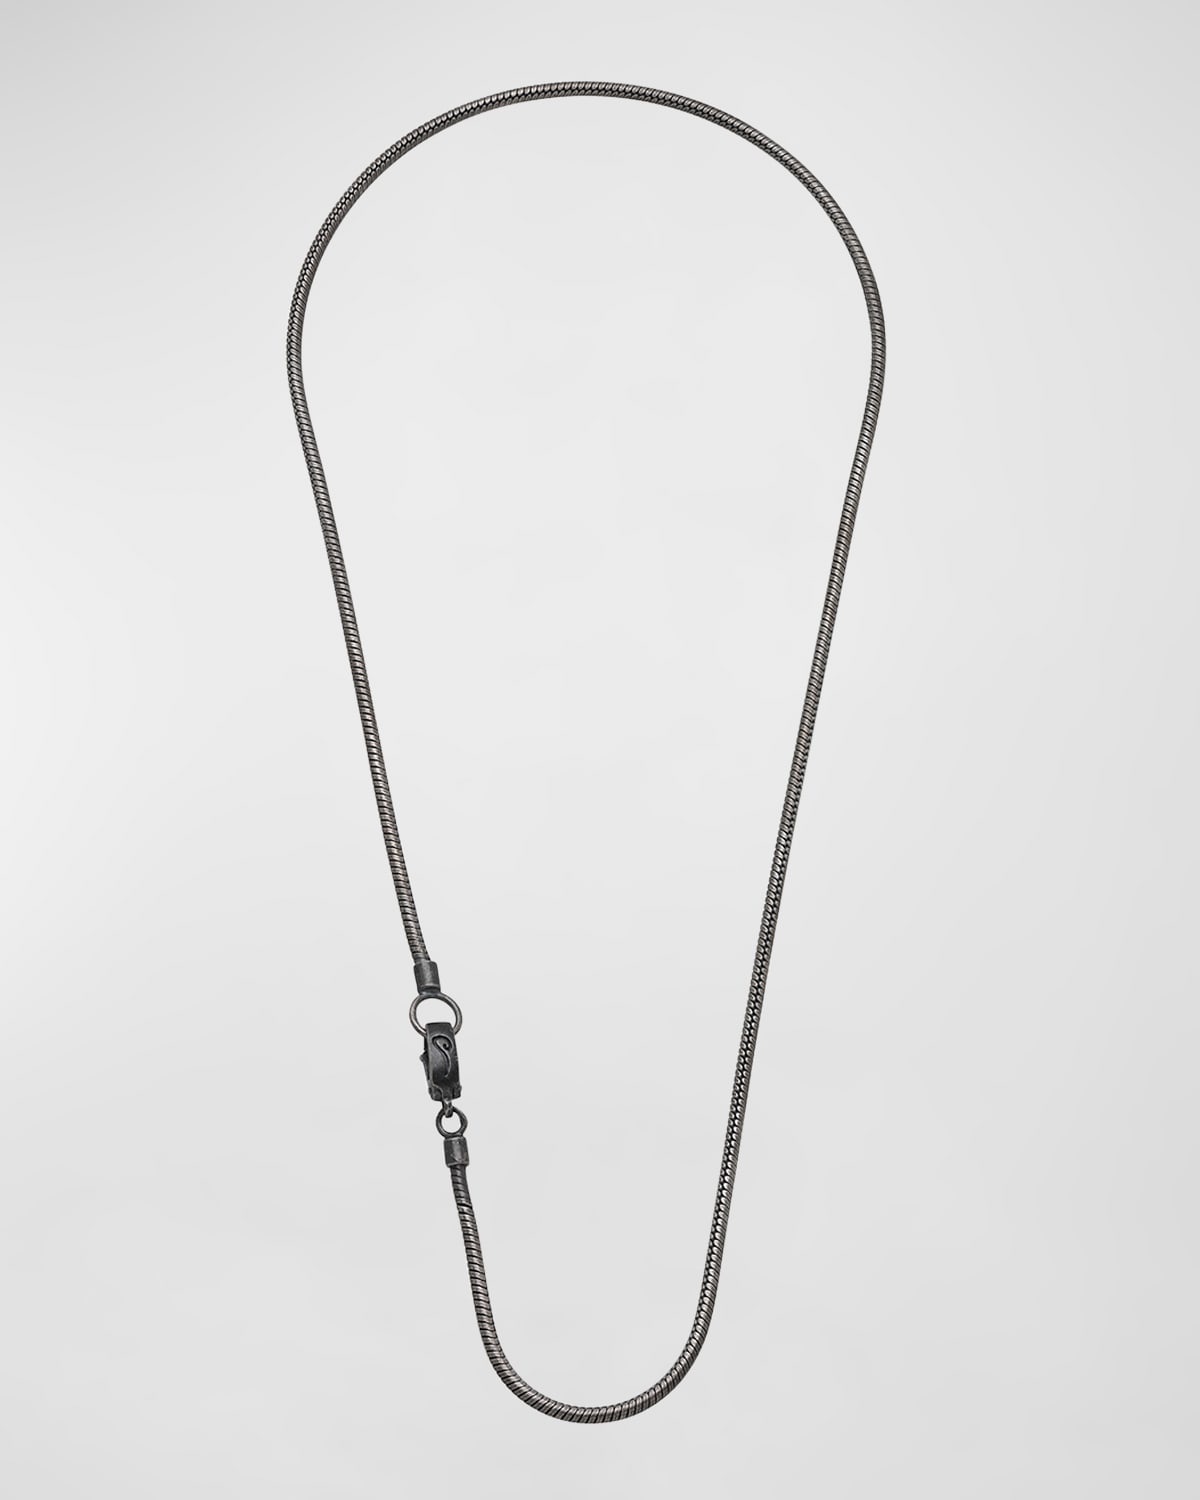 Shop Marco Dal Maso Men's Classy Oxidized Silver Necklace, 22"l